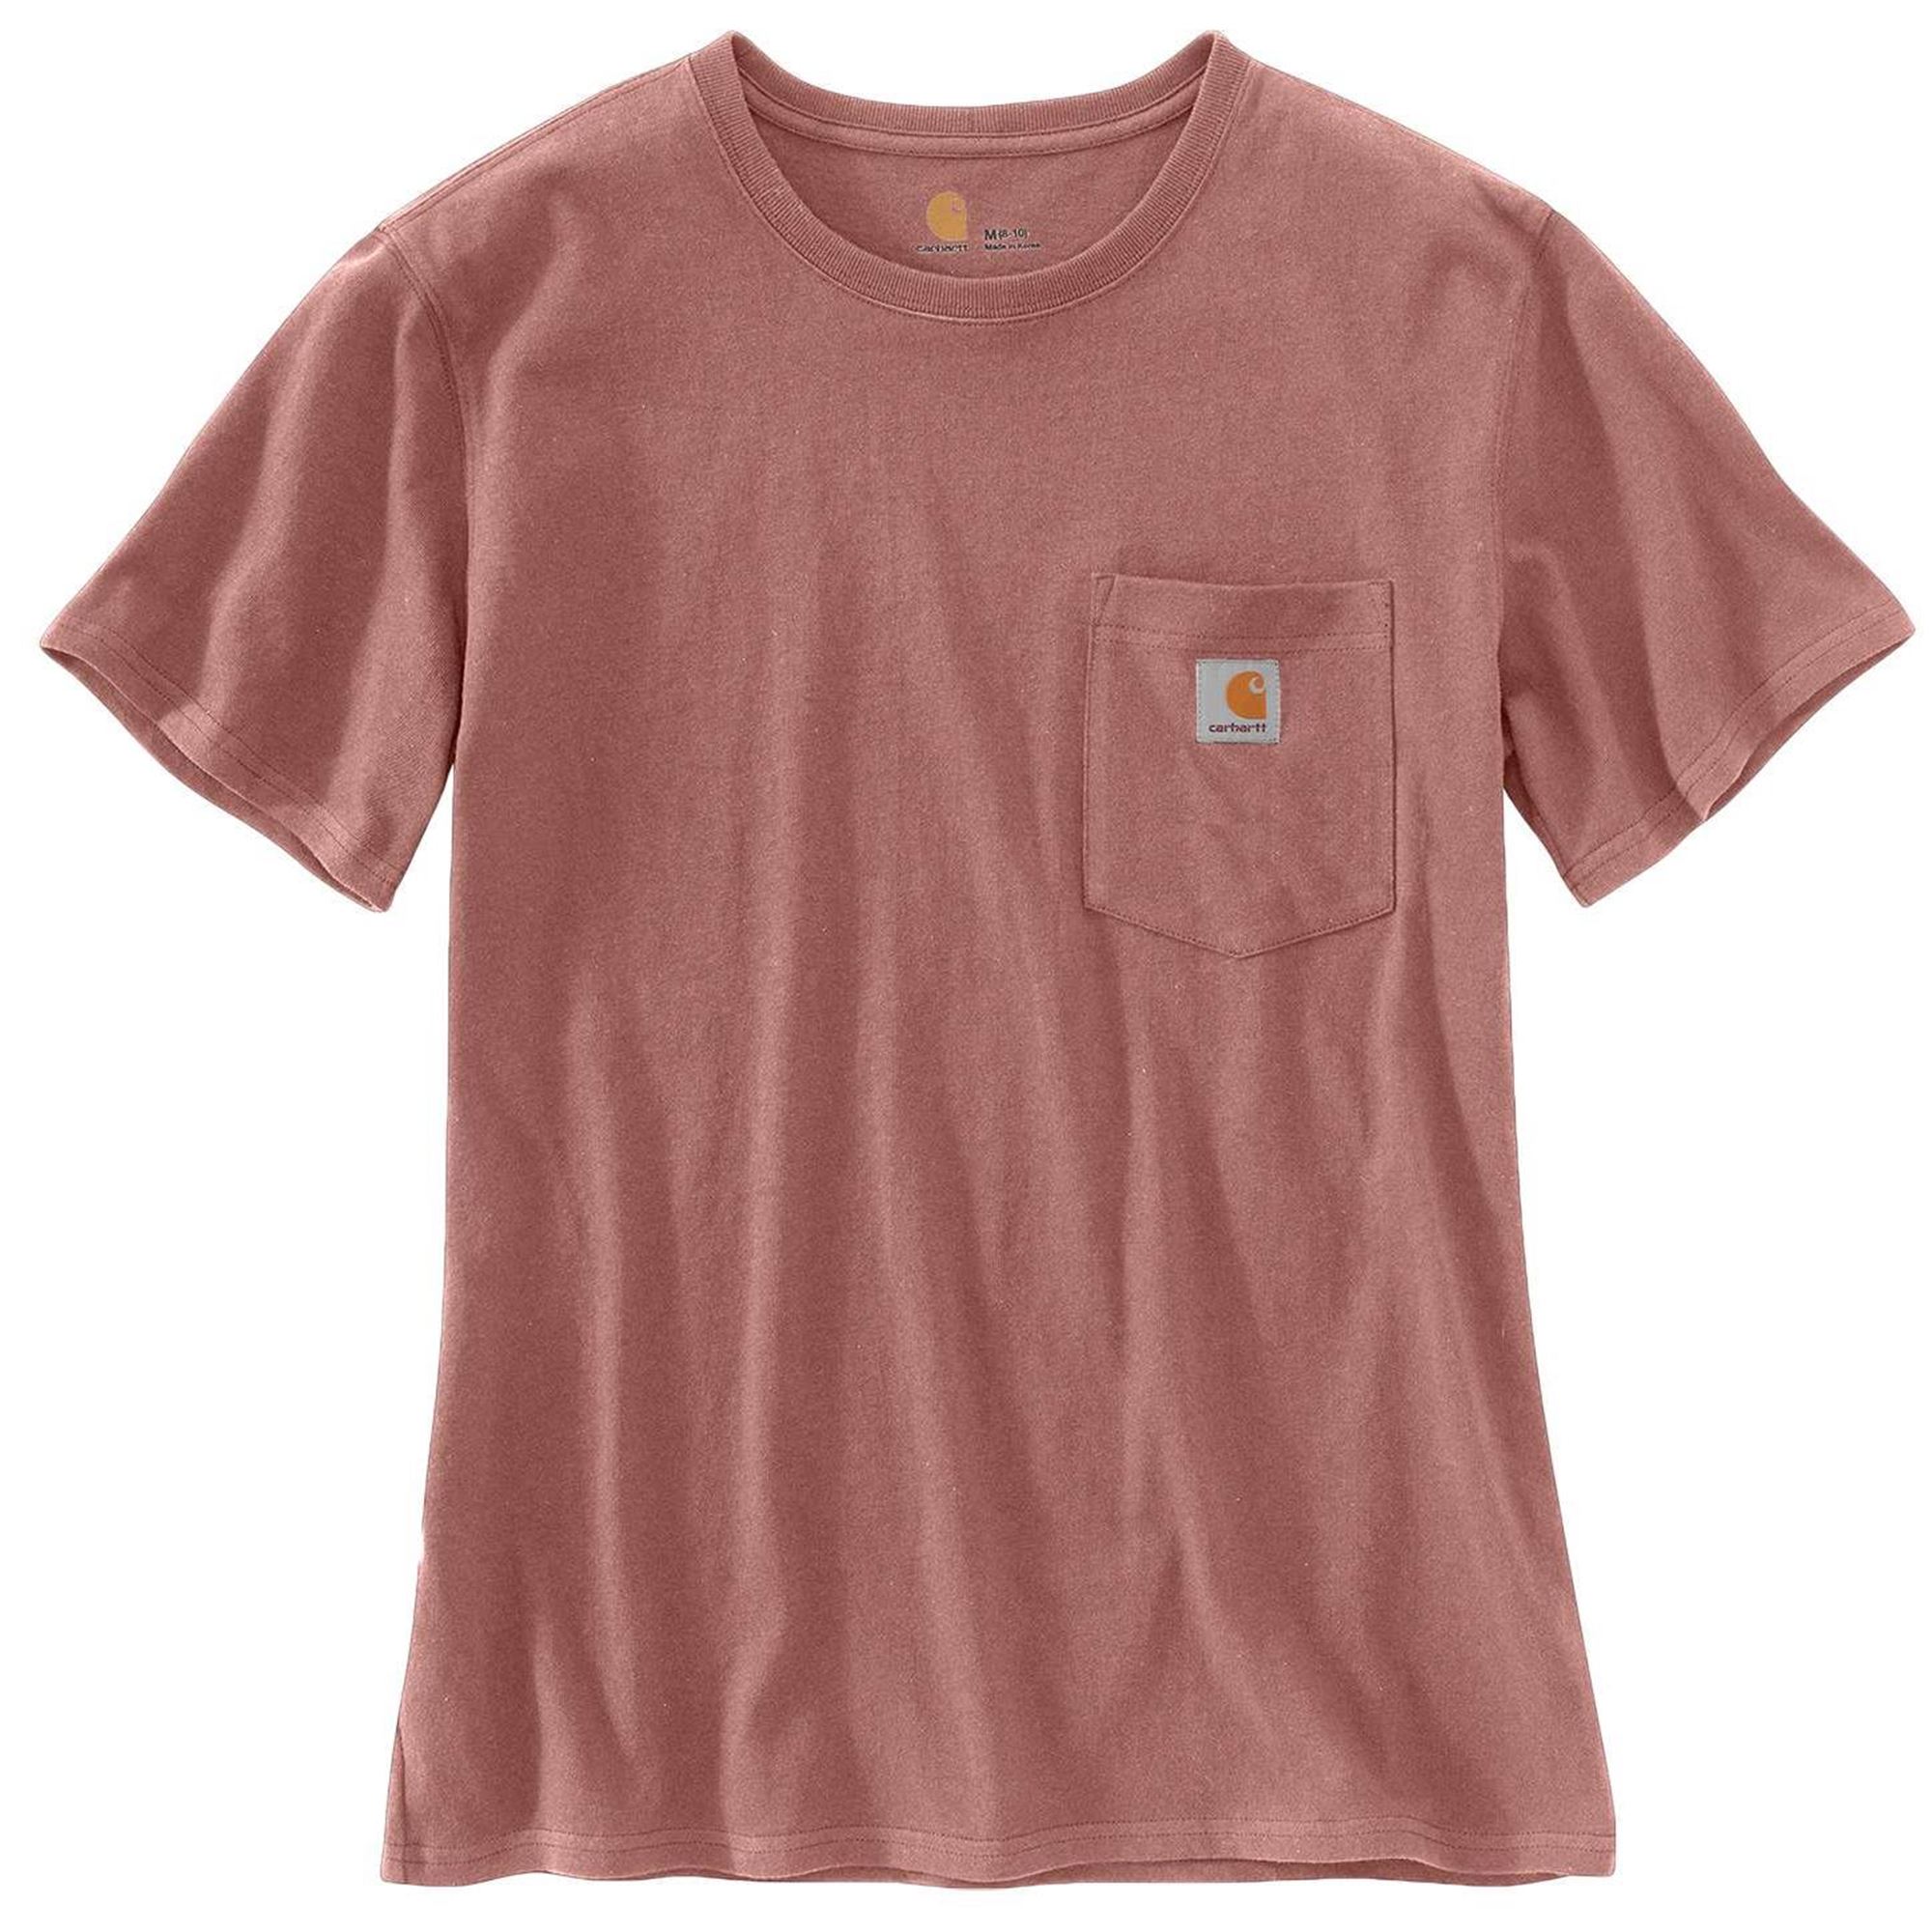 Carhartt Womens T-shirt